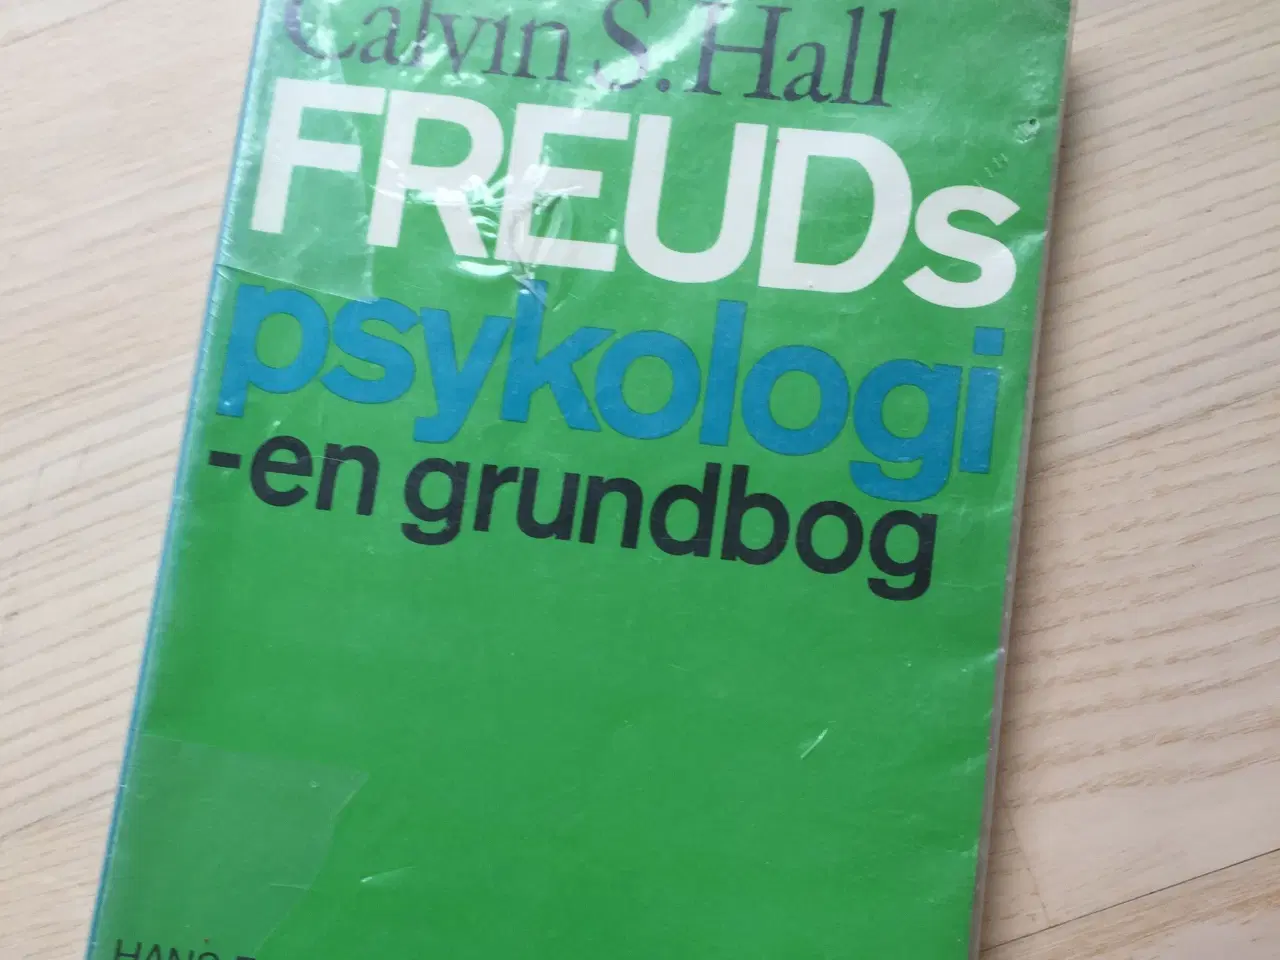 Billede 1 - Freuds psykologi - en grundbog